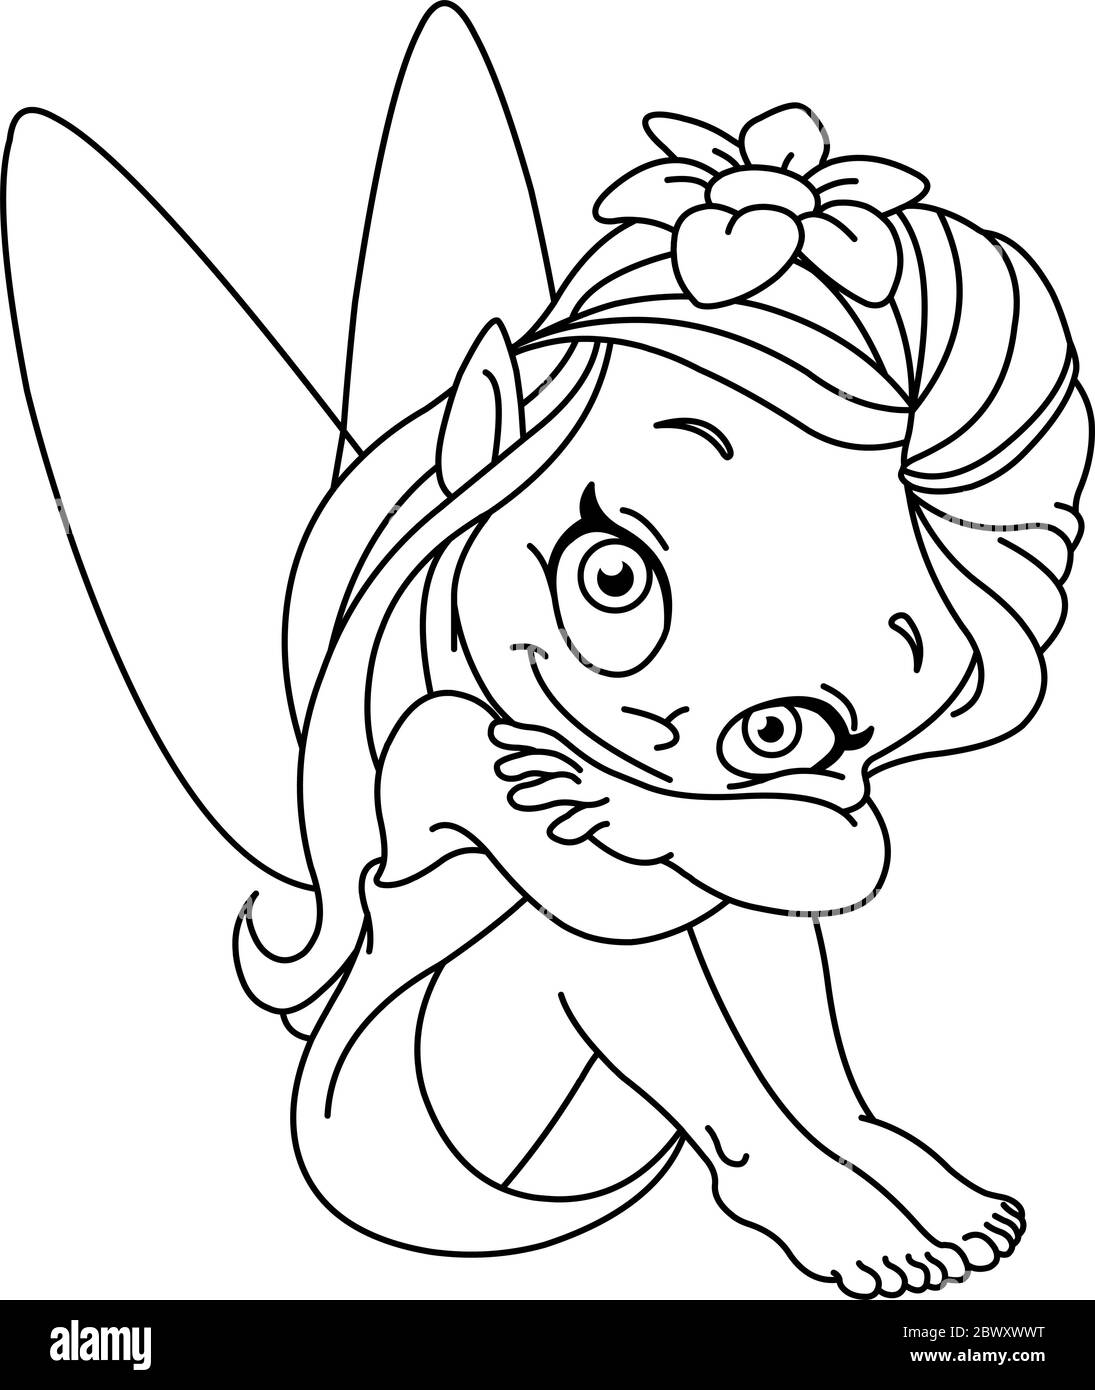 Illustrazione delineata di una fata piccola. Pagina di colorazione VECTO. Illustrazione Vettoriale